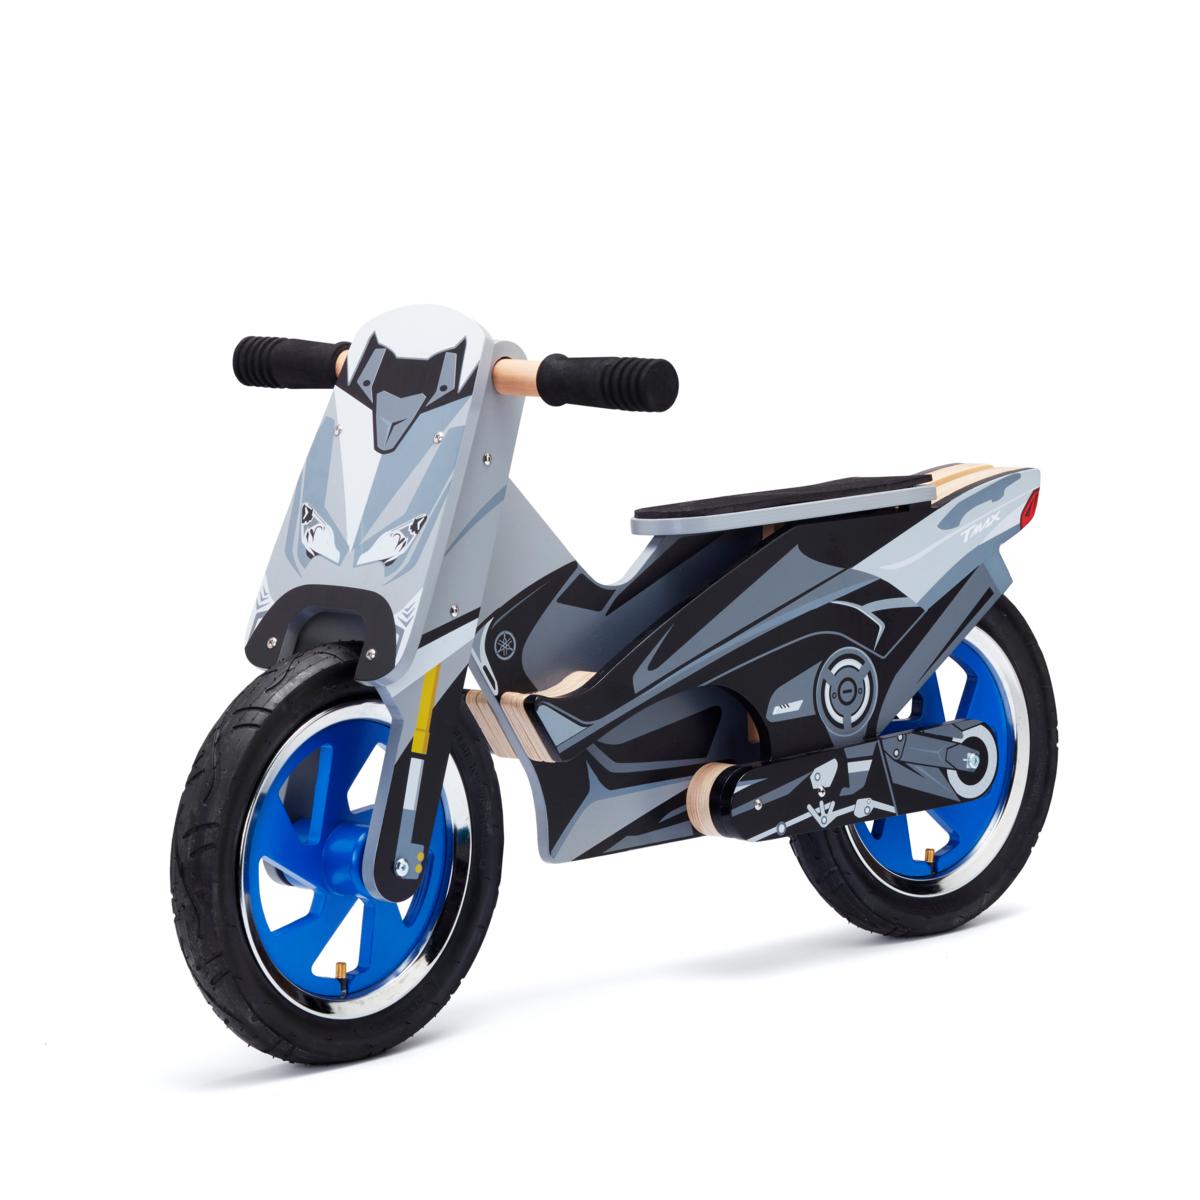 Scooter-Laufrad.
Inspiriert vom neuen Yamaha-TMAX! Unterstützen Sie Ihre Kinder dabei, wie sie ihr Gleichgewicht halten. 
